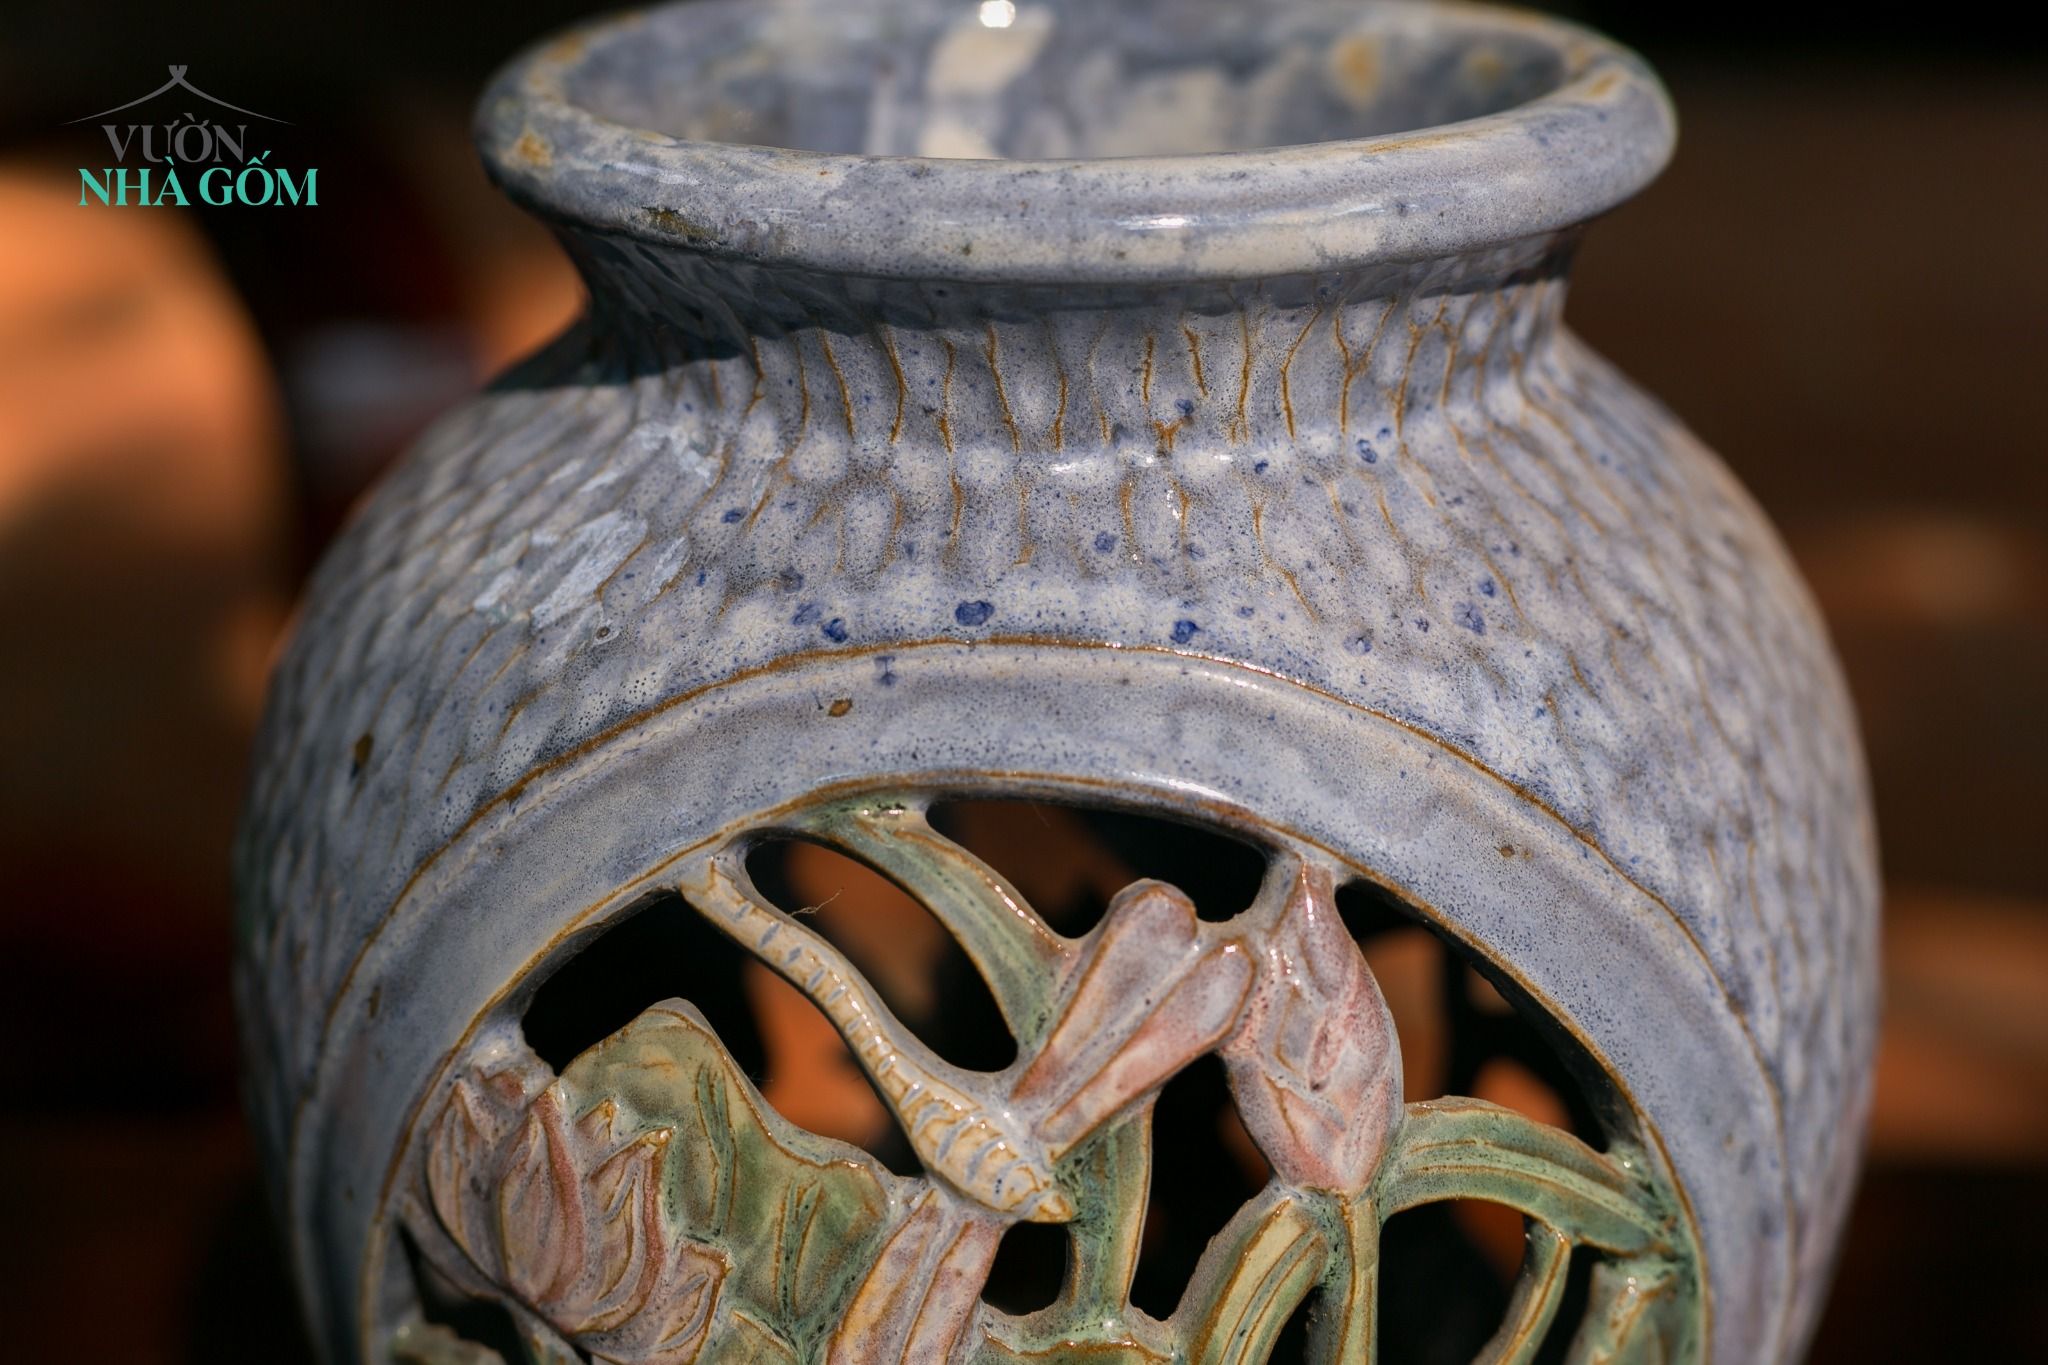  Bình vuốt tay chạm lọng theo chủ đề hoa sen, gốm thủ công Nam Bộ, H30 cm 